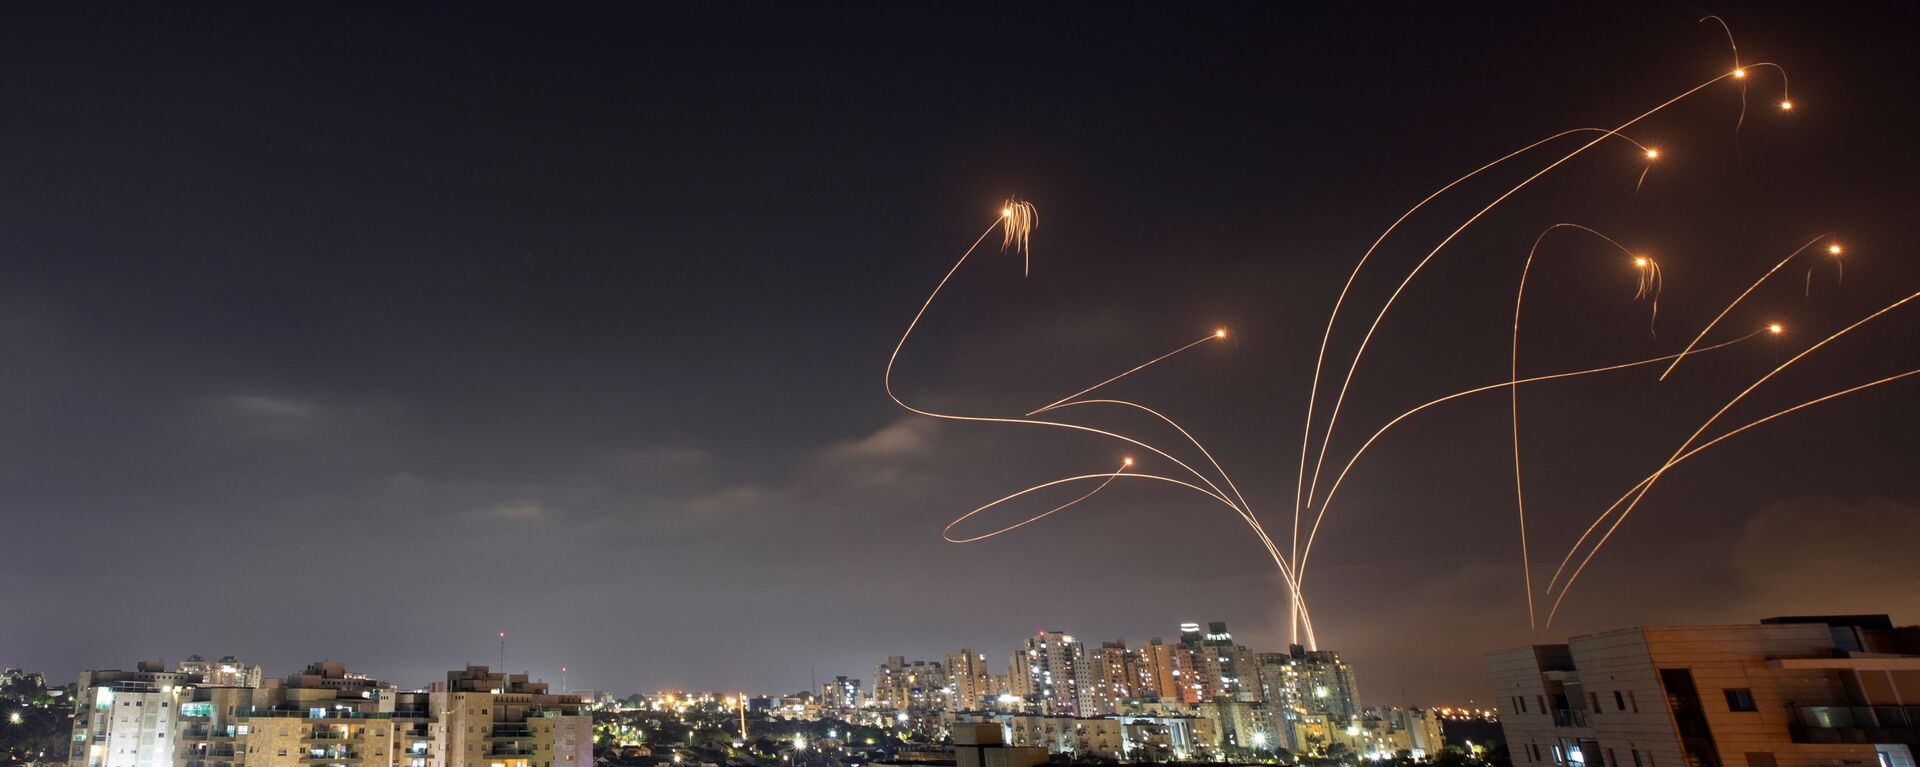 Израильская противоракетная система Железный купол перехватывает ракеты, запущенные из сектора Газа в направлении Израиля - Sputnik International, 1920, 14.09.2021